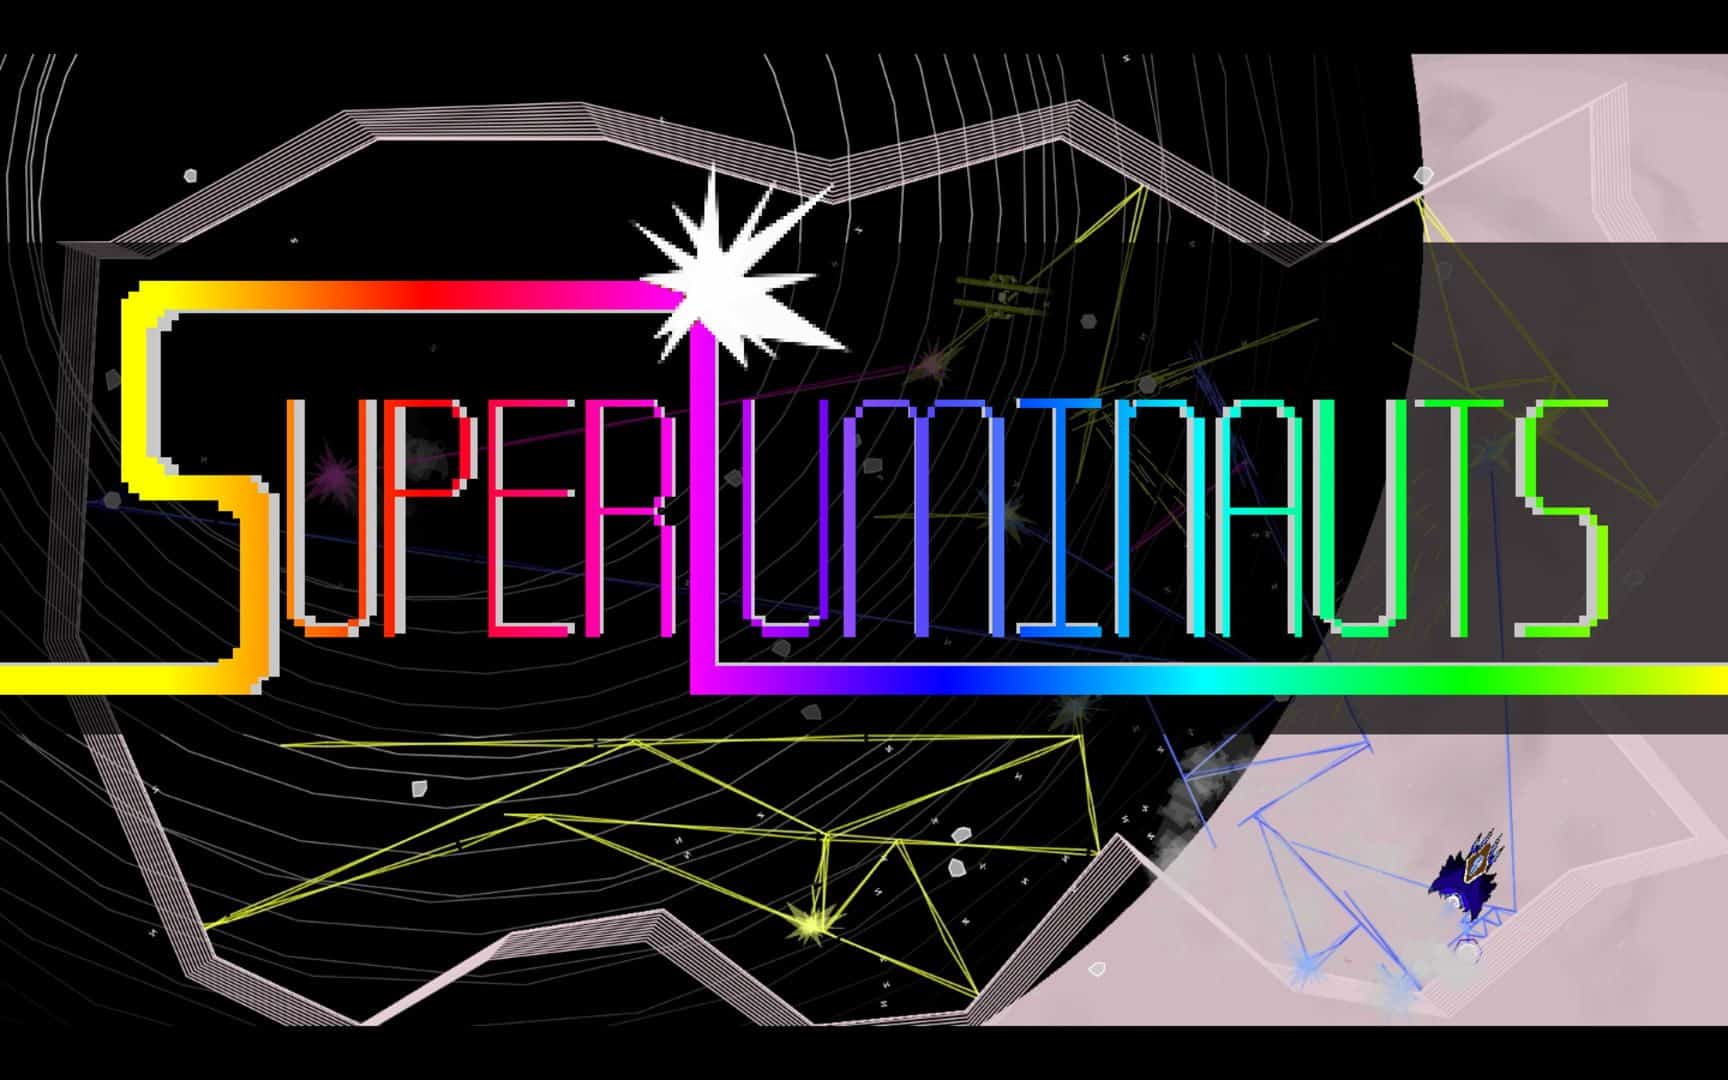 SuperLuminauts